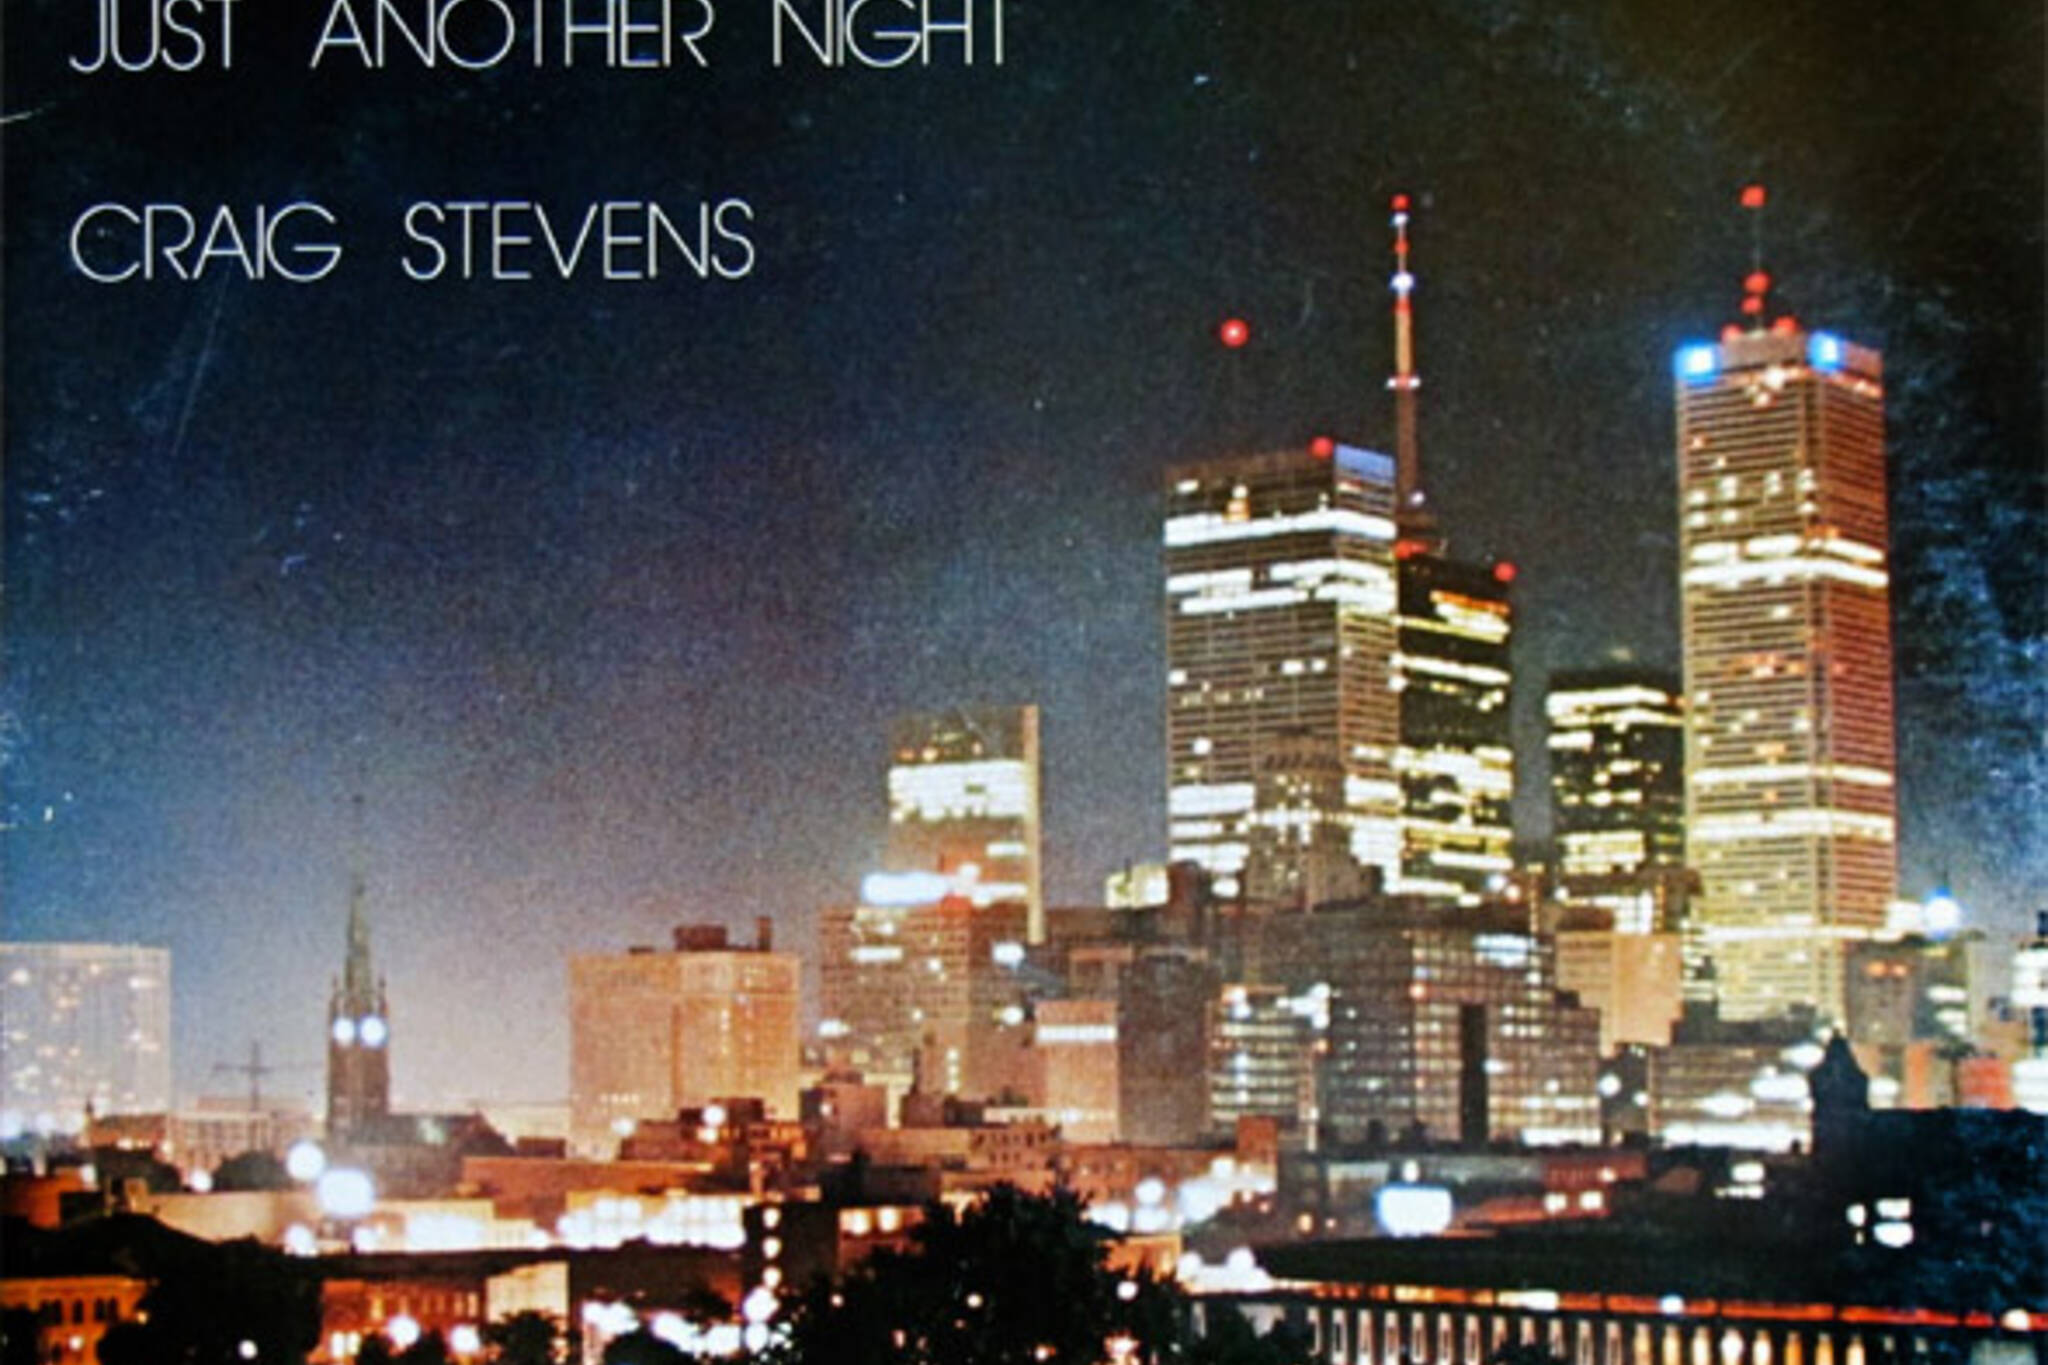 Toronto album covers 1980s